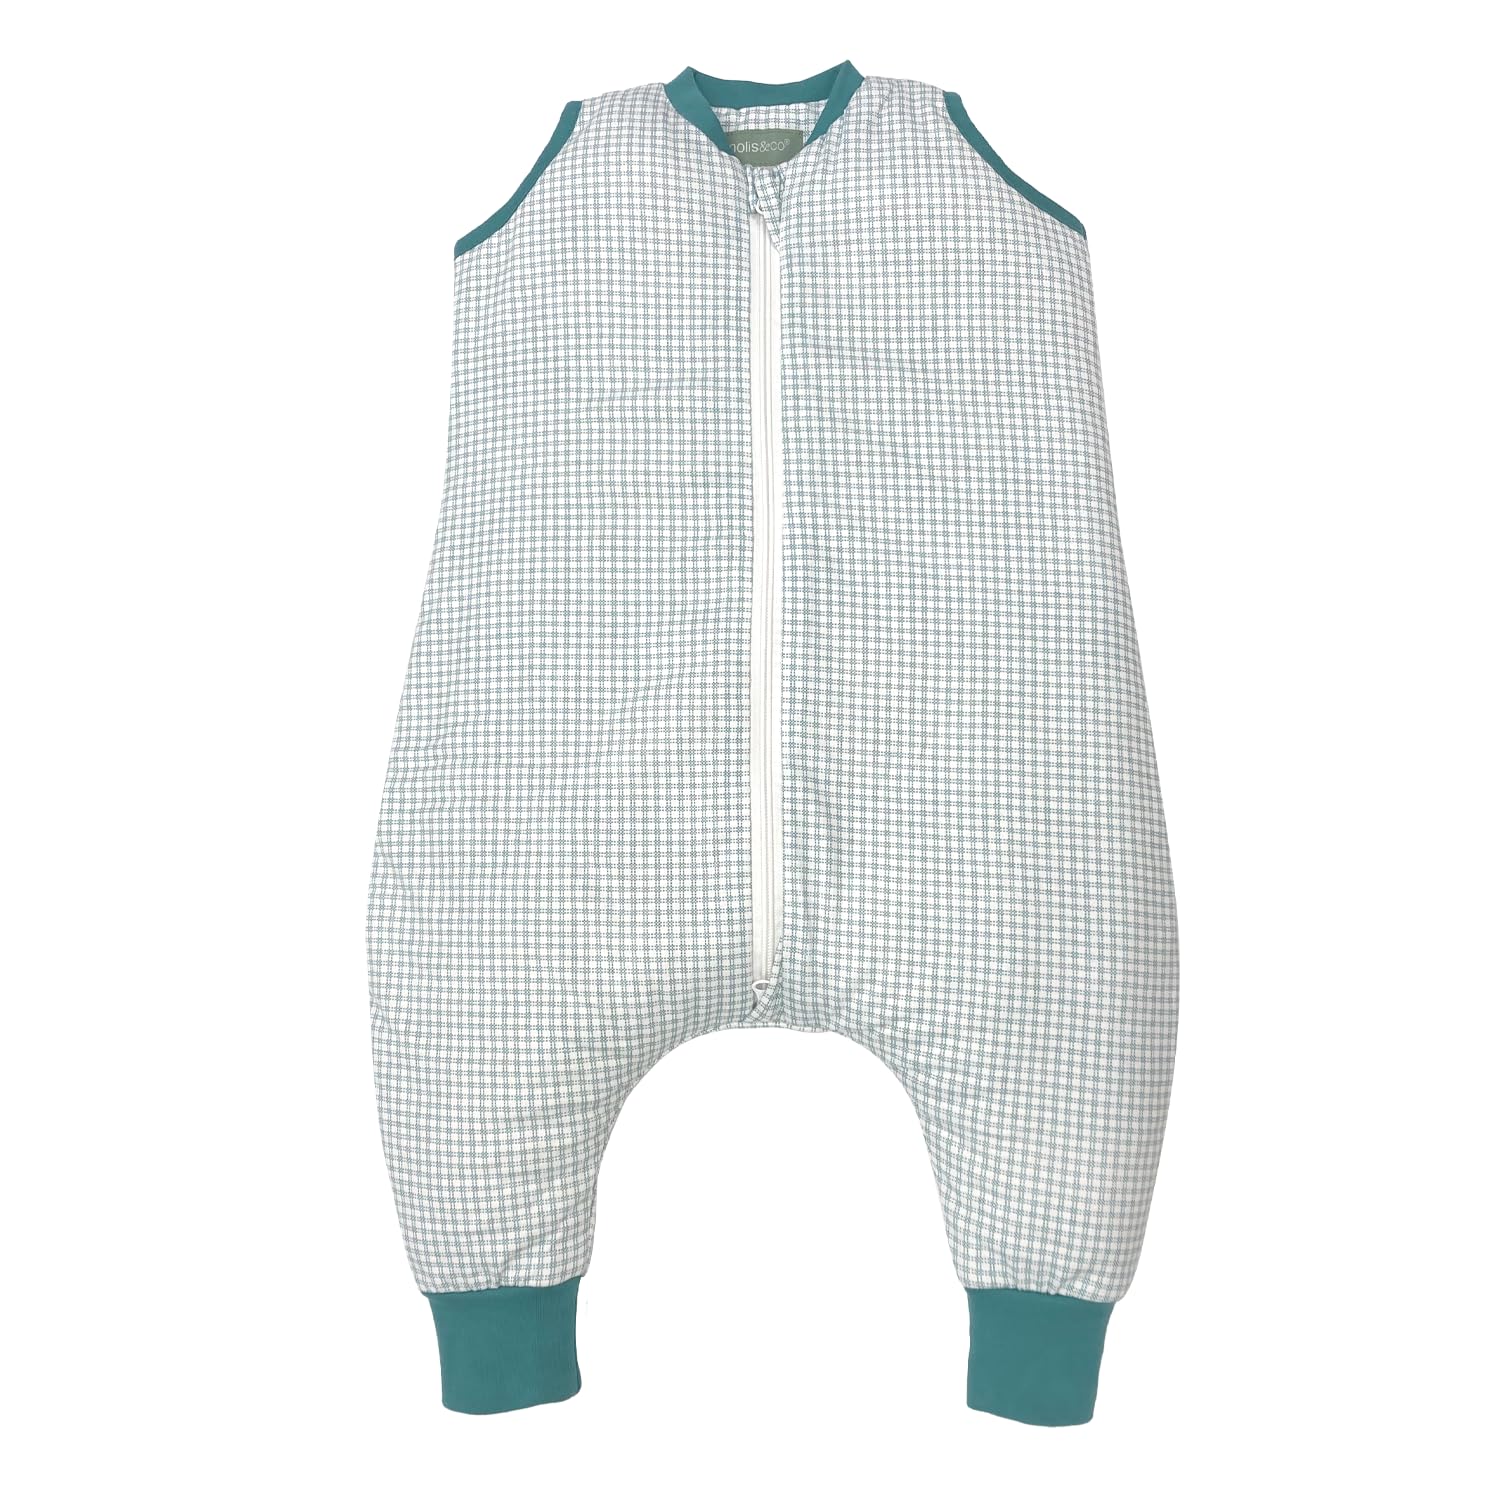 molis&co. 1.0 TOG. Baby-Schlafsack mit Füßen. Größe: 70 cm (1 Jahr). Ideal für Übergang. Adriatic Check. 100% Baumwolle. (Oeko-TEX 100).